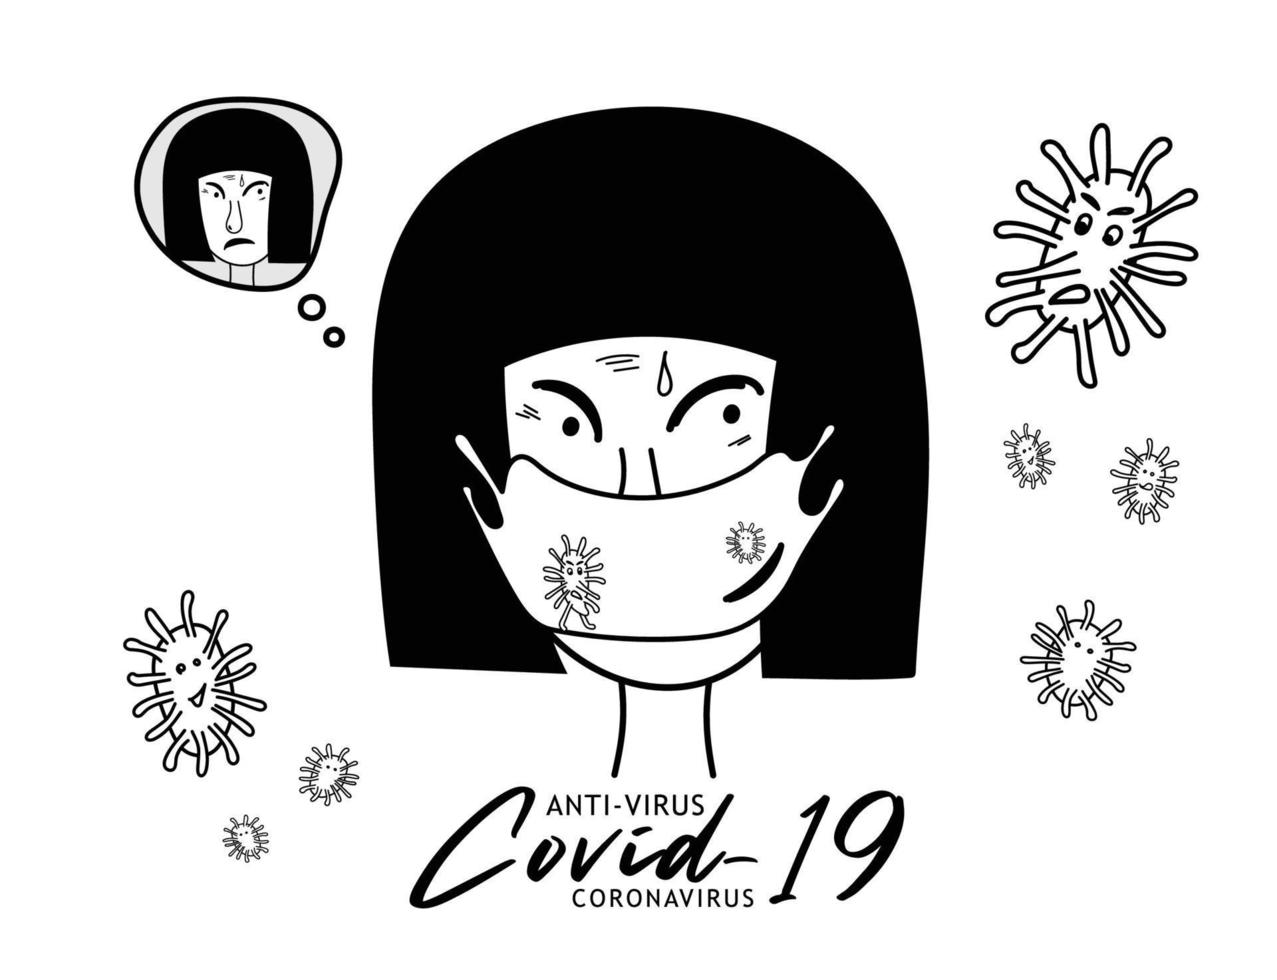 femmes portant des masques anti-virus covid-19, illustration vectorielle de la maladie à coronavirus covid-19, signe, logo, dessin animé, symbole, icône médicale vecteur